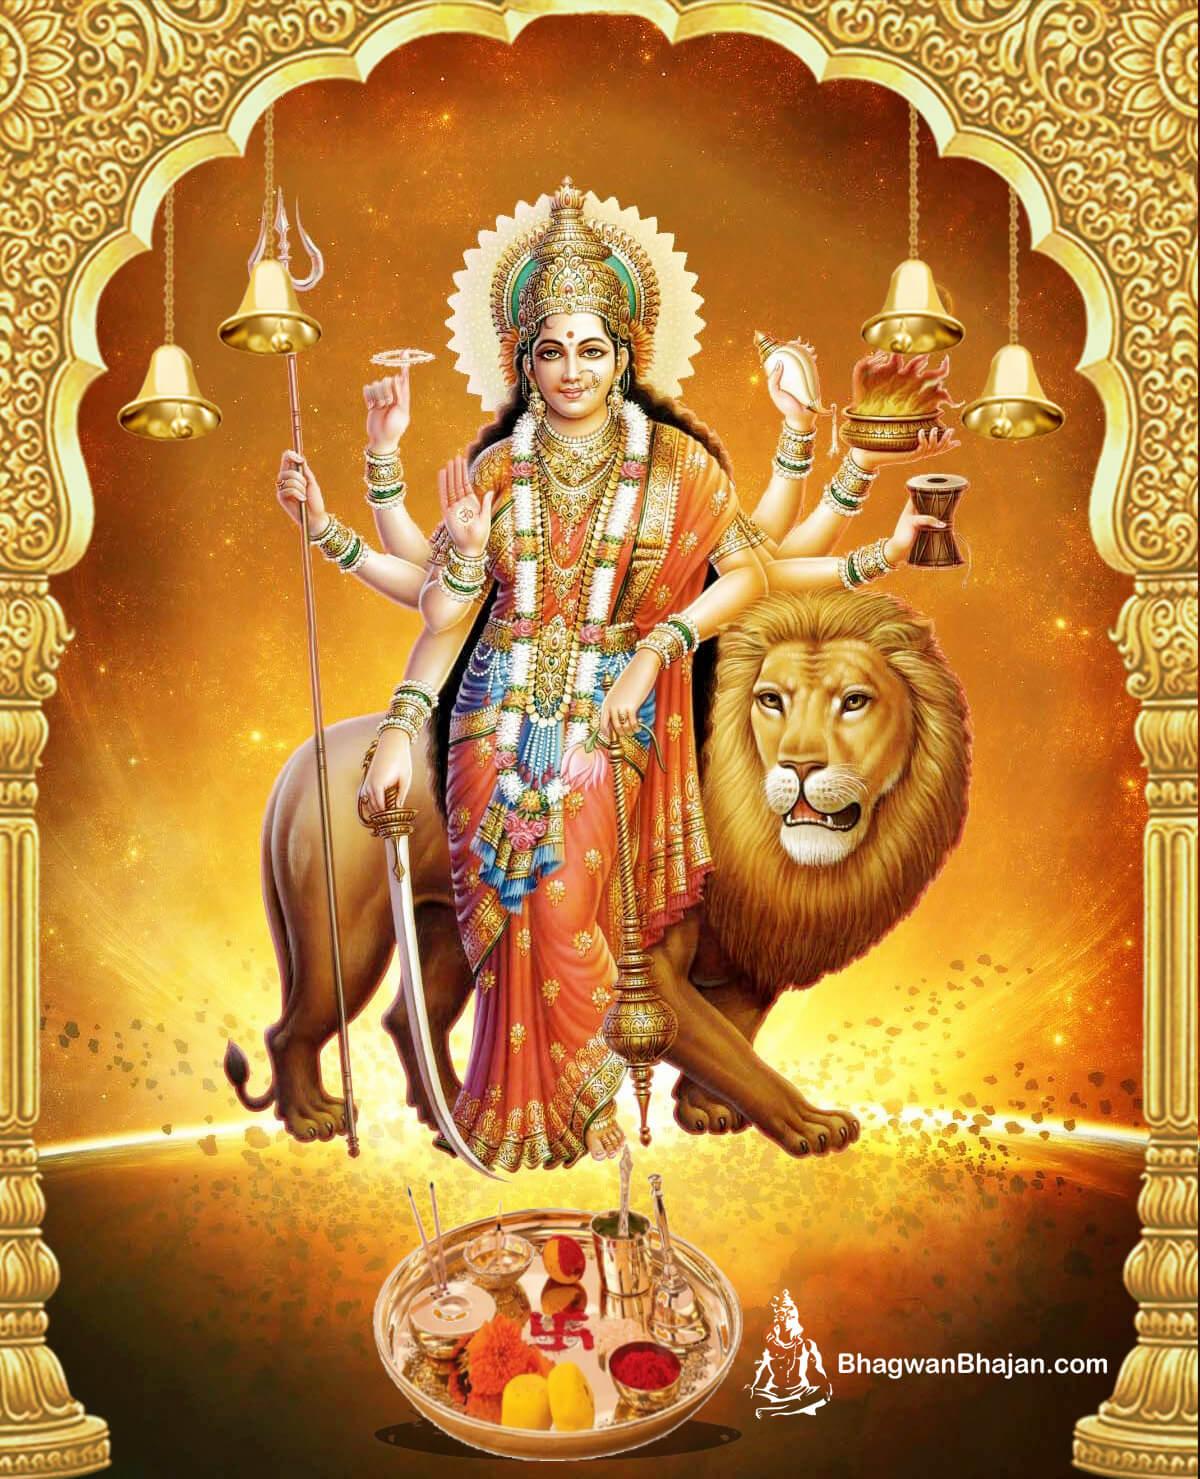 Download Free HD Wallpaper, Photo & Image of Maa Durga. Maa